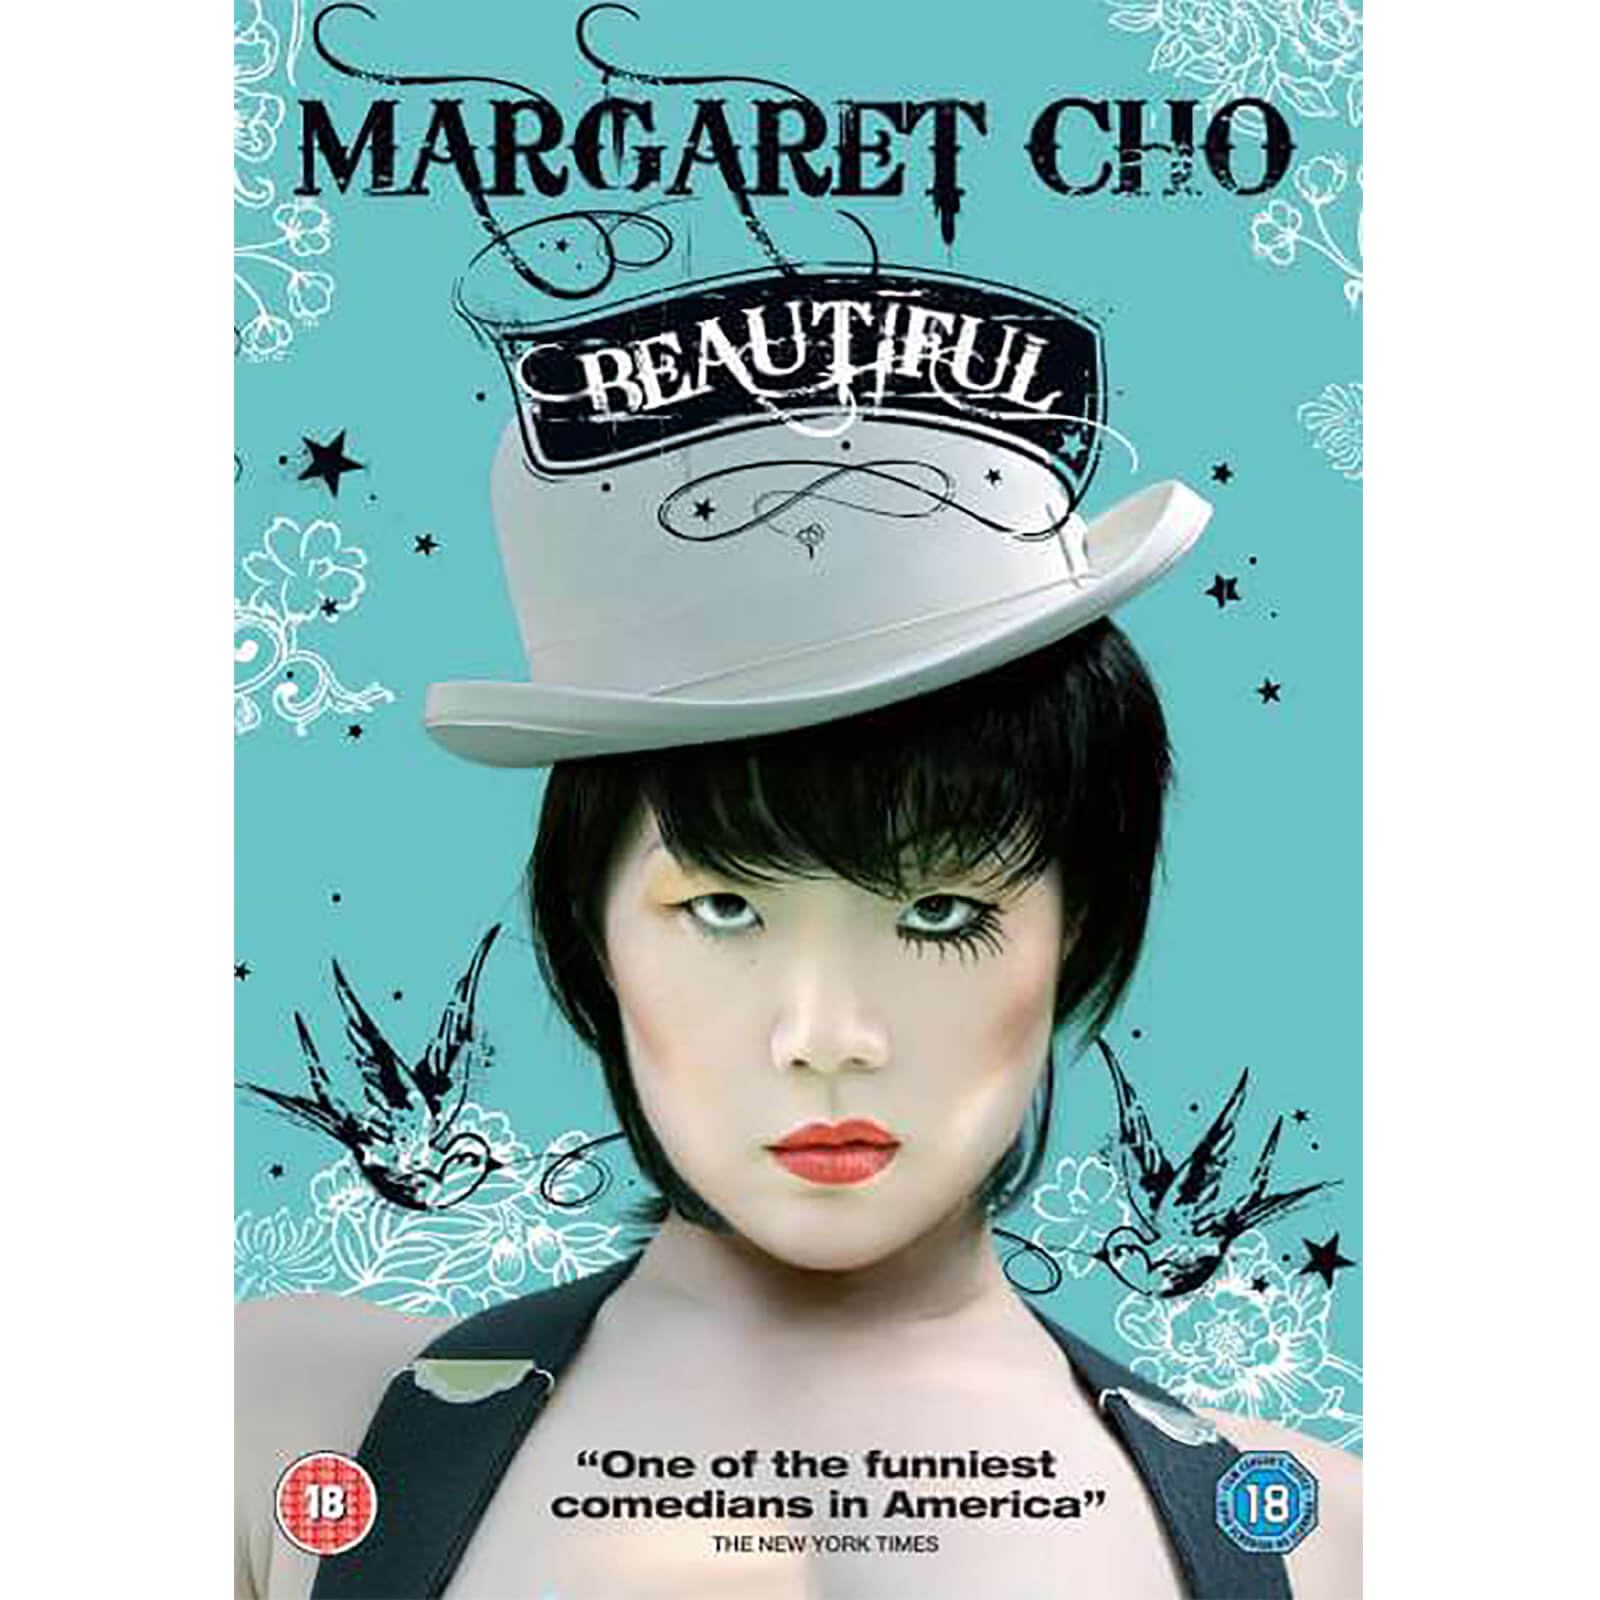 Margaret Cho: Beautiful von Matchbox Films